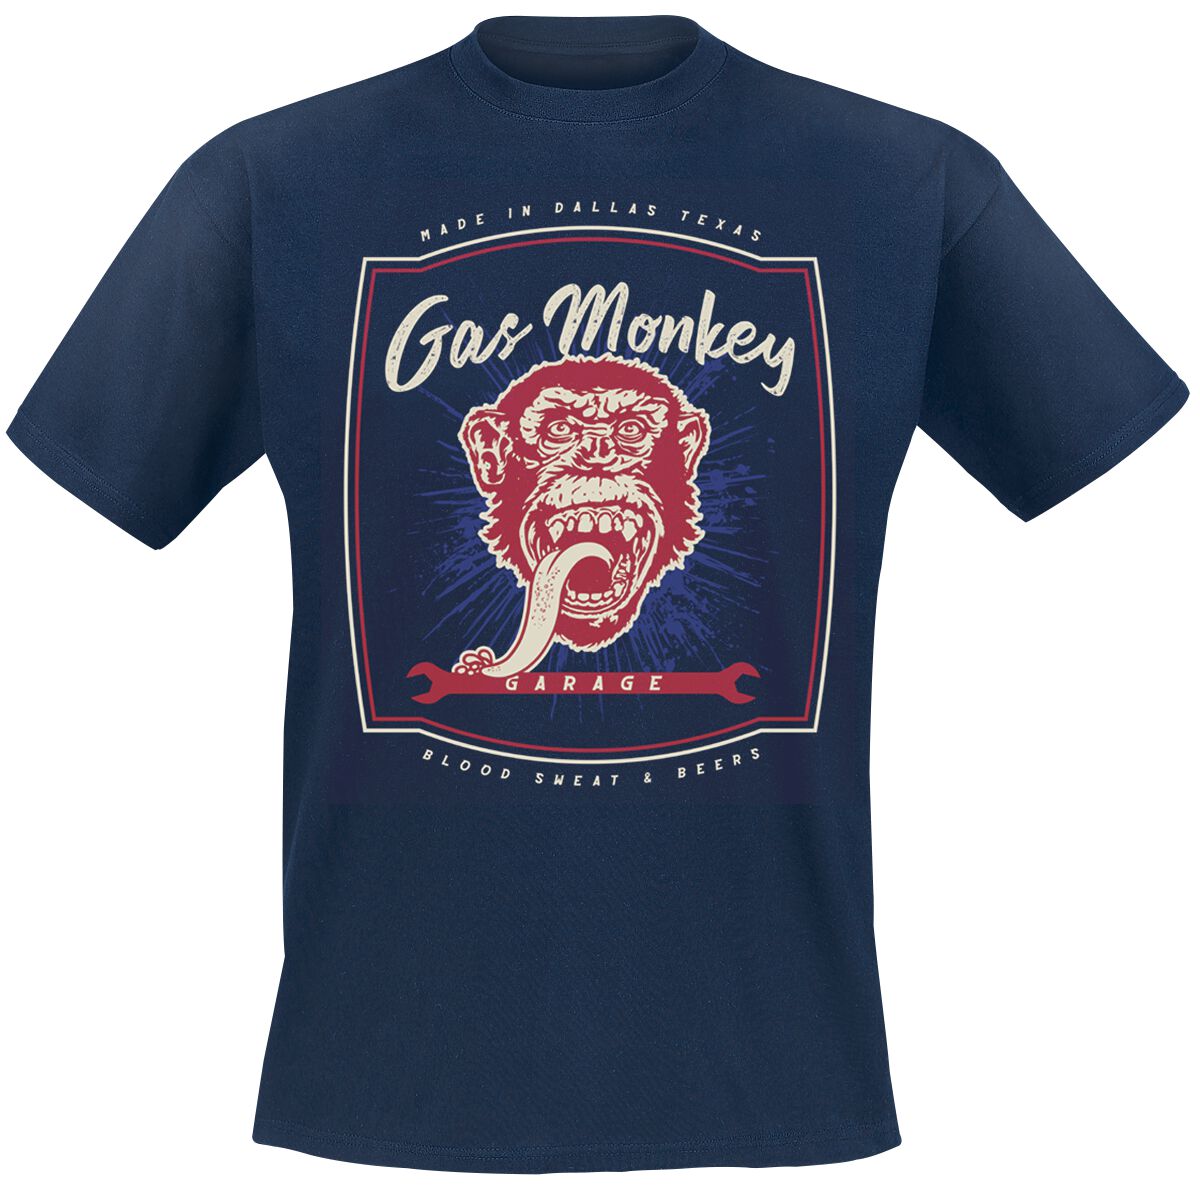 Gas Monkey Garage T-Shirt - Made In Dallas - S bis M - für Männer - Größe M - navy  - Lizenzierter Fanartikel